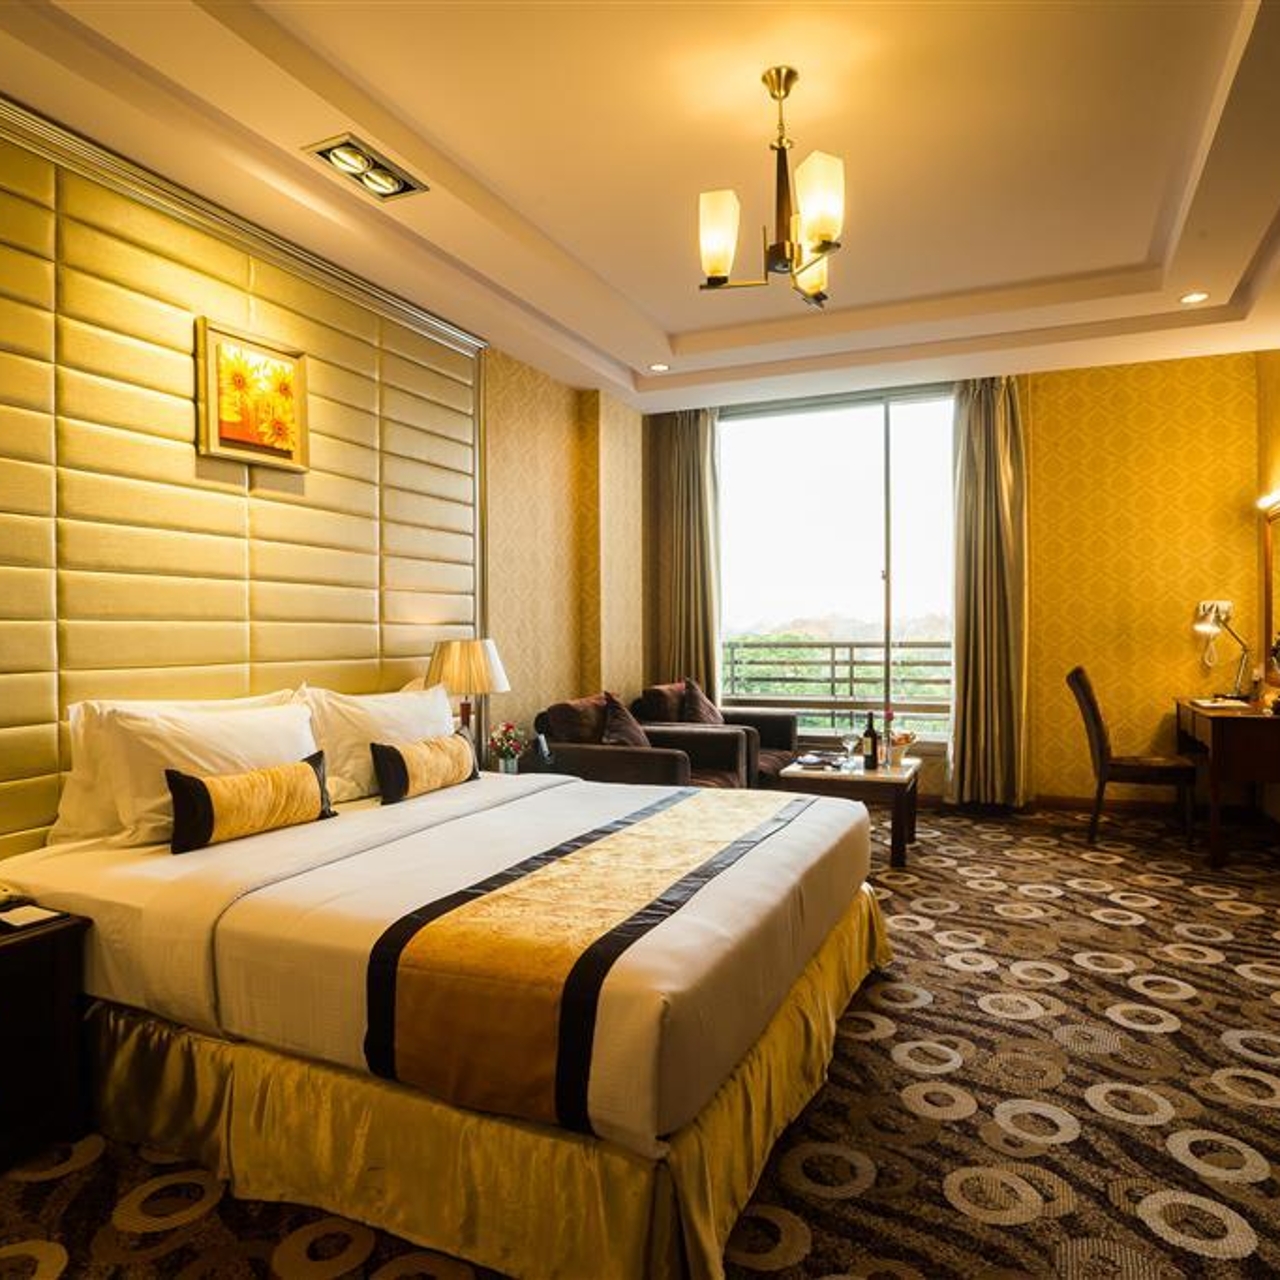 BEST WESTERN GREEN HILL HOTEL - 4 HRS star hotel in Yangon